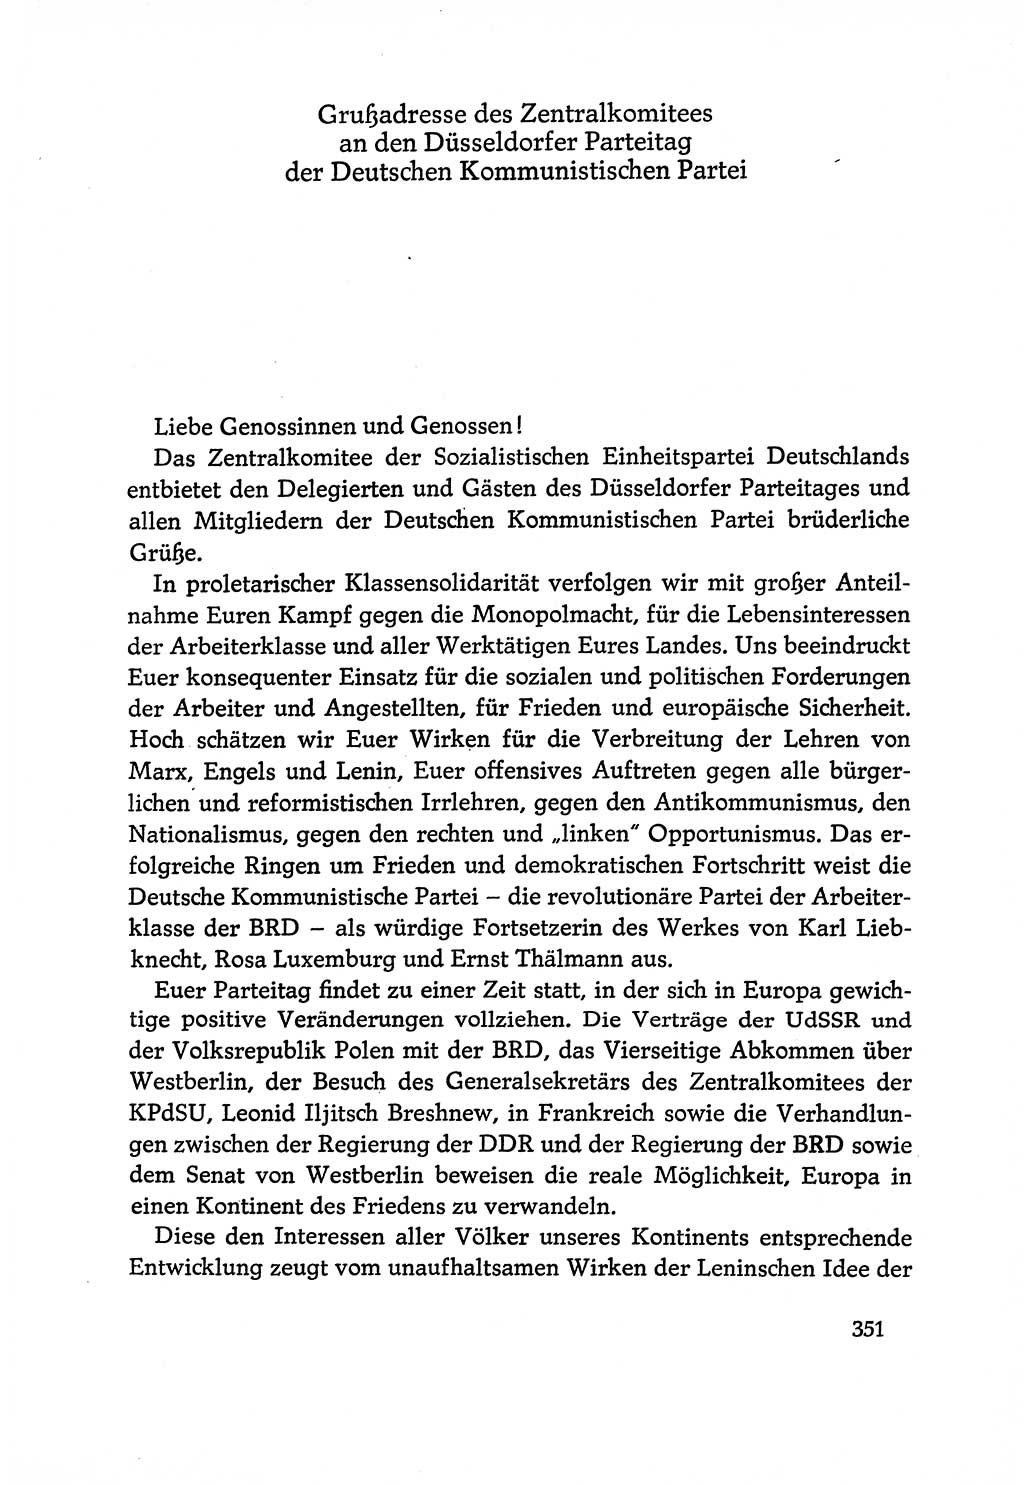 Dokumente der Sozialistischen Einheitspartei Deutschlands (SED) [Deutsche Demokratische Republik (DDR)] 1970-1971, Seite 351 (Dok. SED DDR 1970-1971, S. 351)